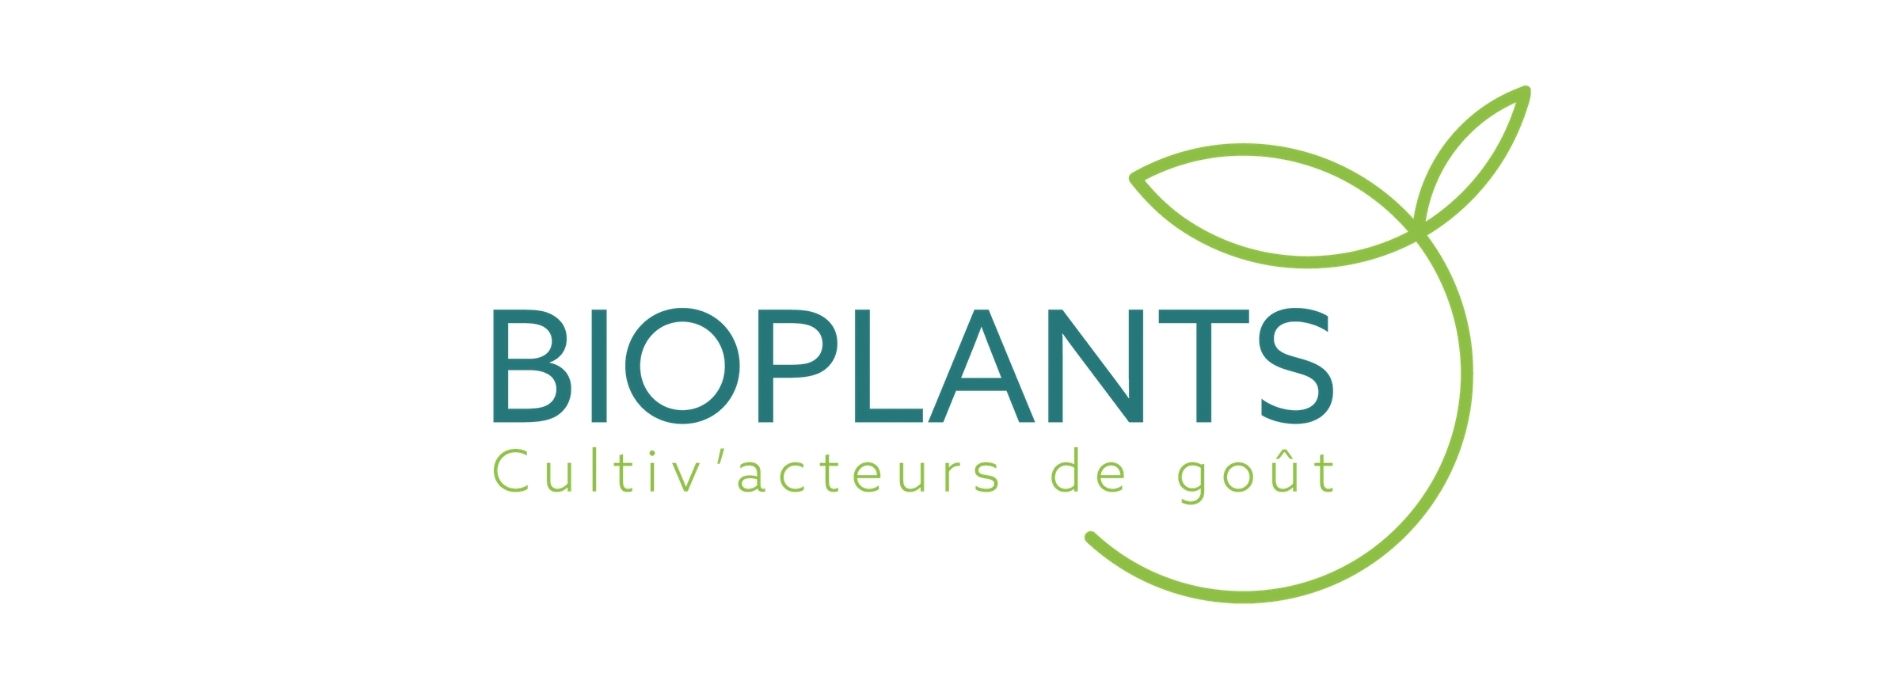 Bioplants opte pour un nouveau logo